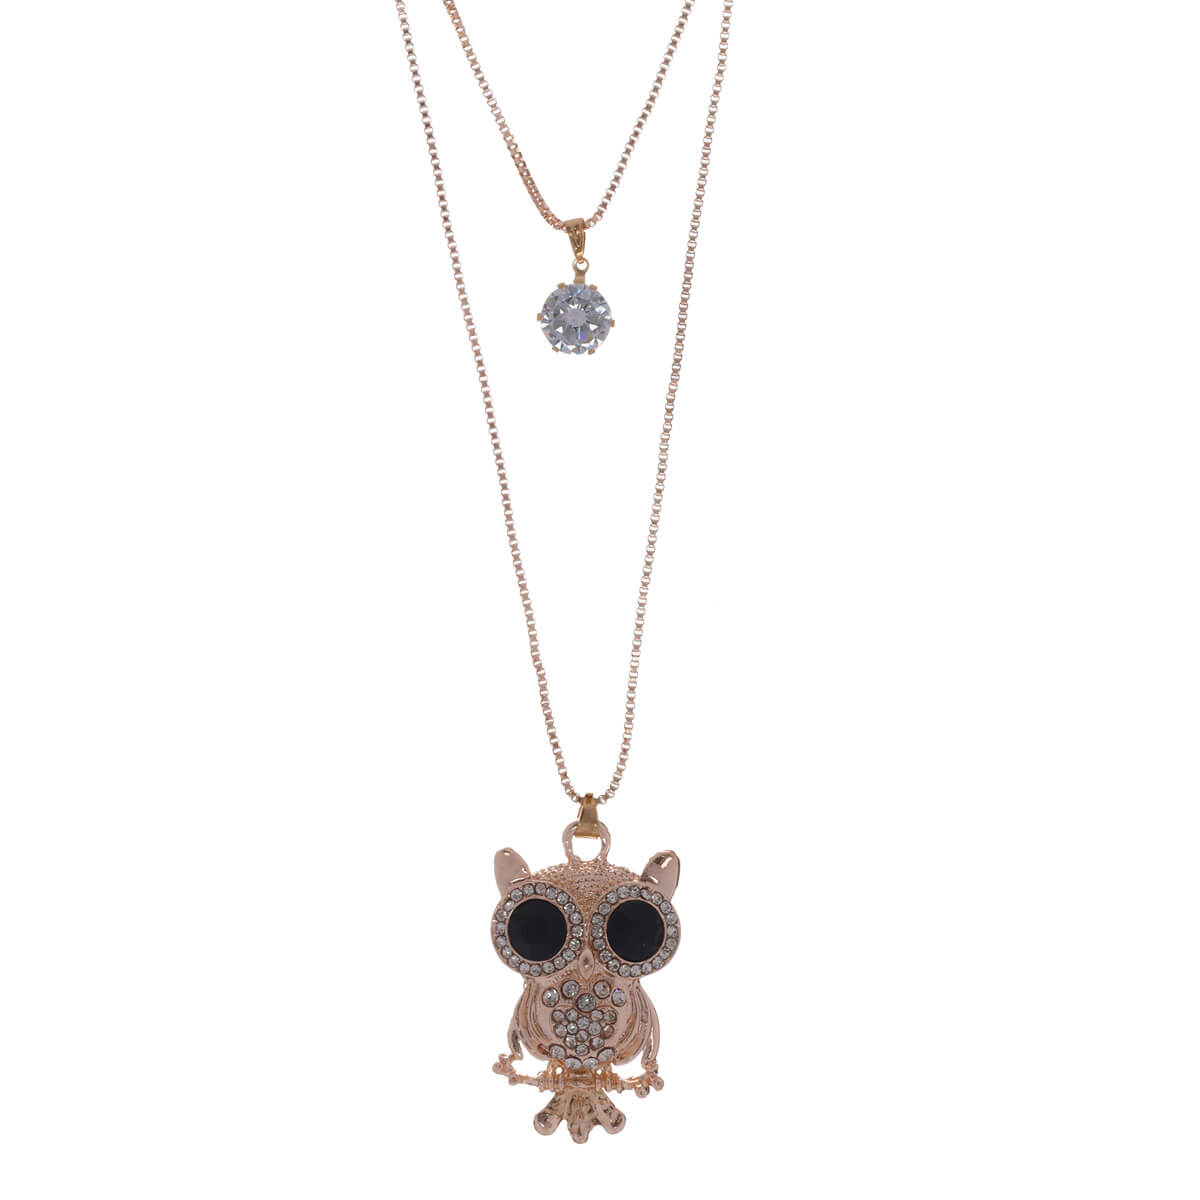 Owl pendant necklace 75cm